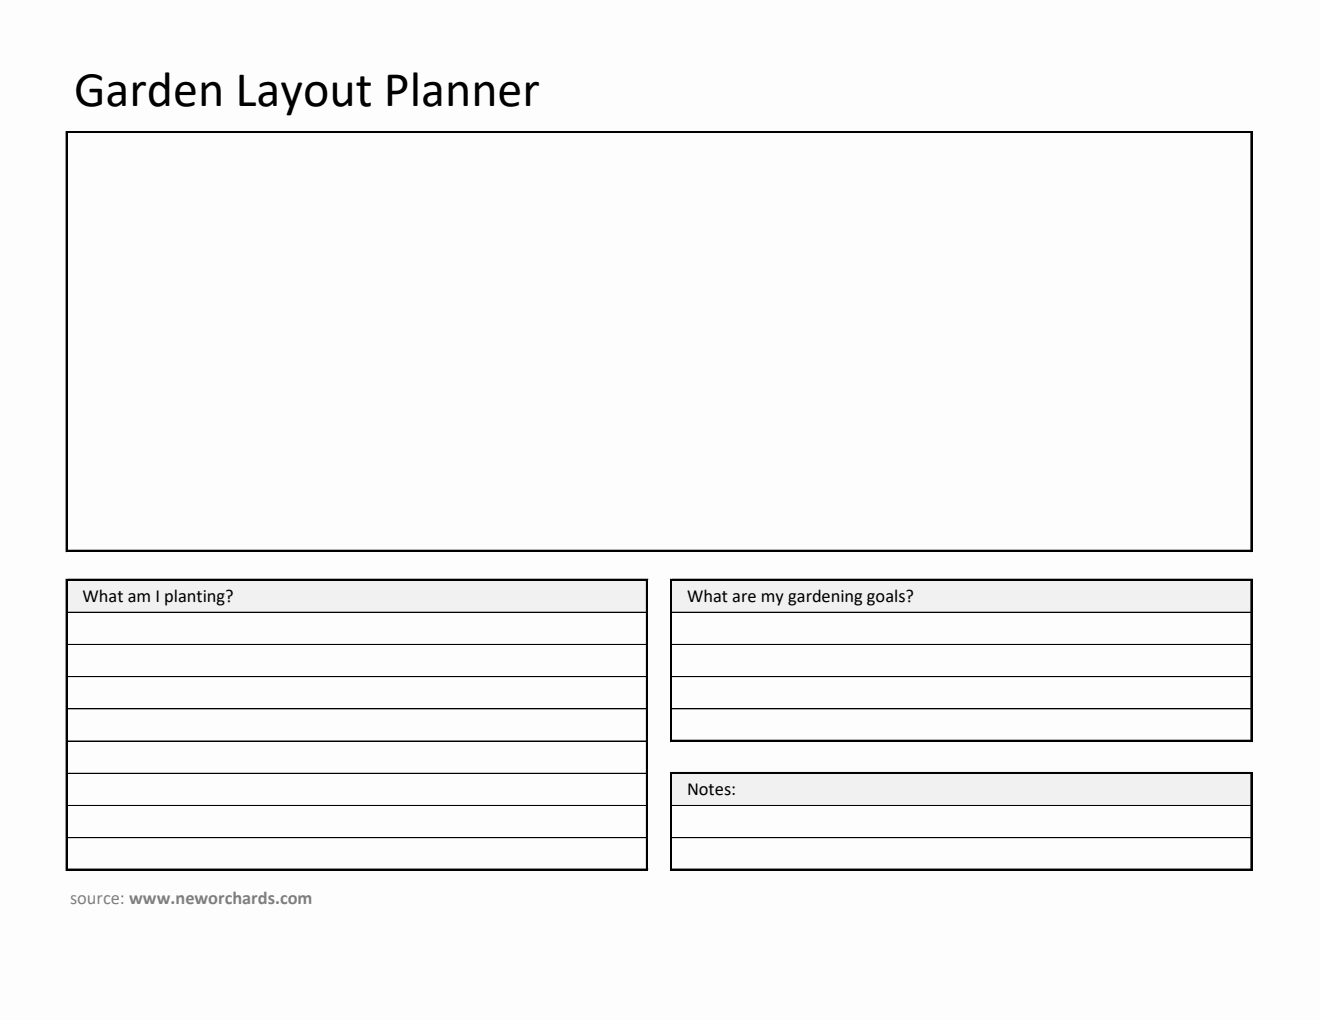 Garden Layout Planner (Excel)